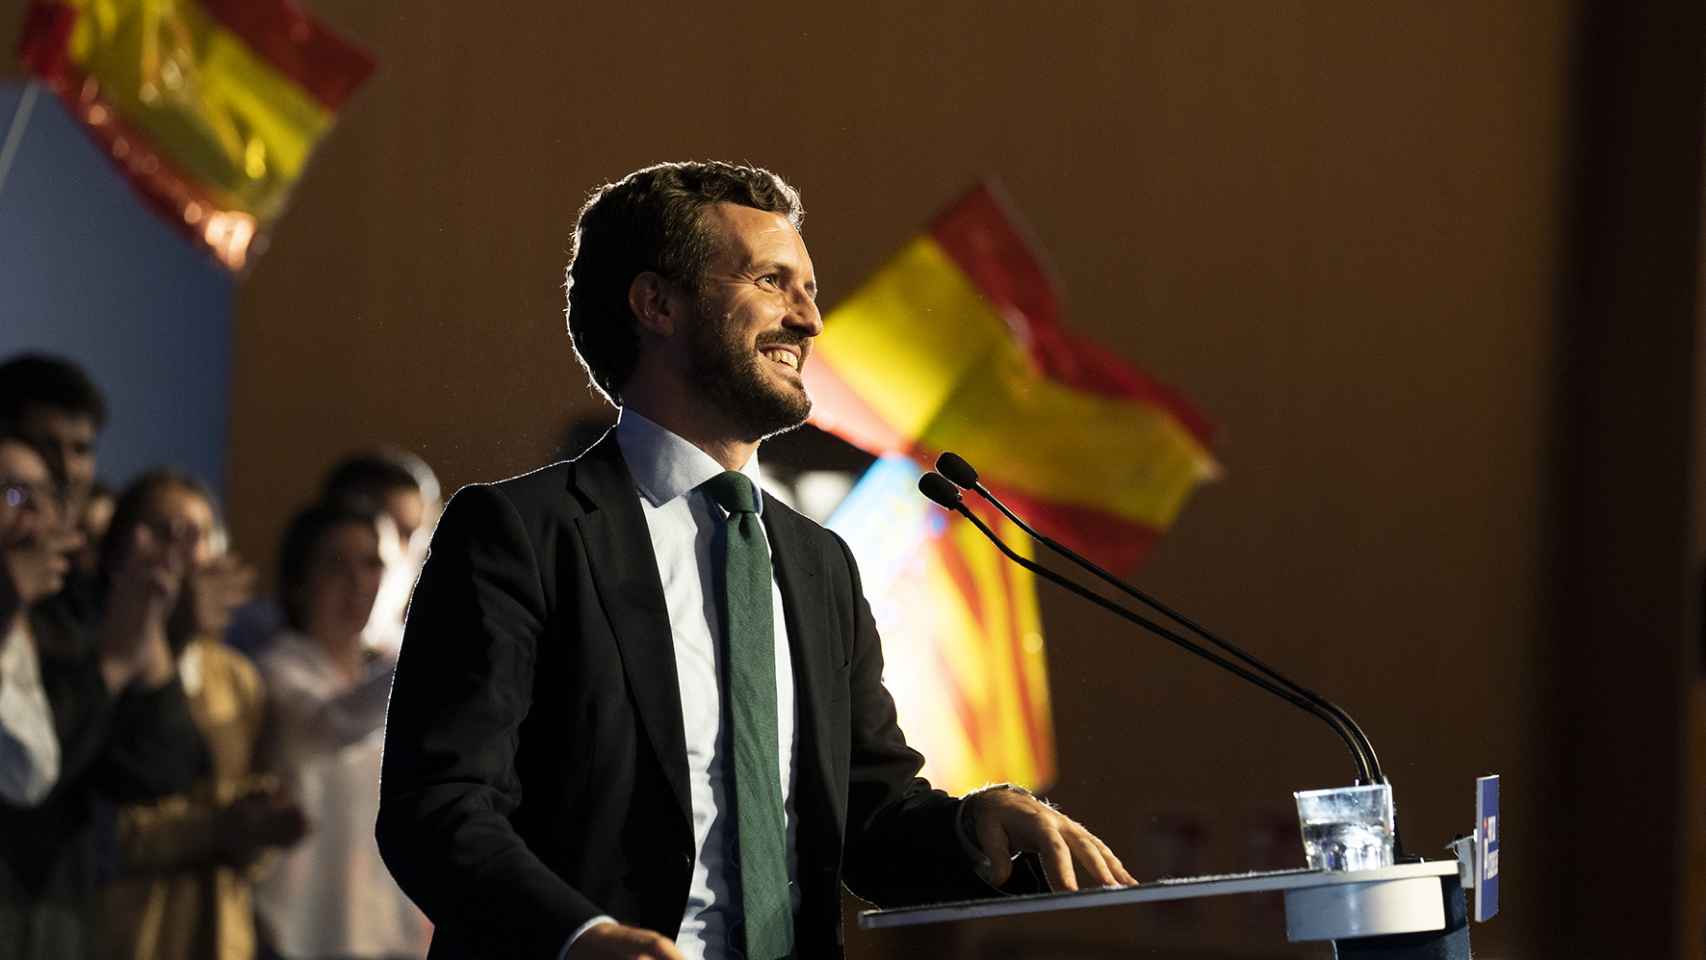 Pablo Casado interviene en un mitin de campaña en Valencia.